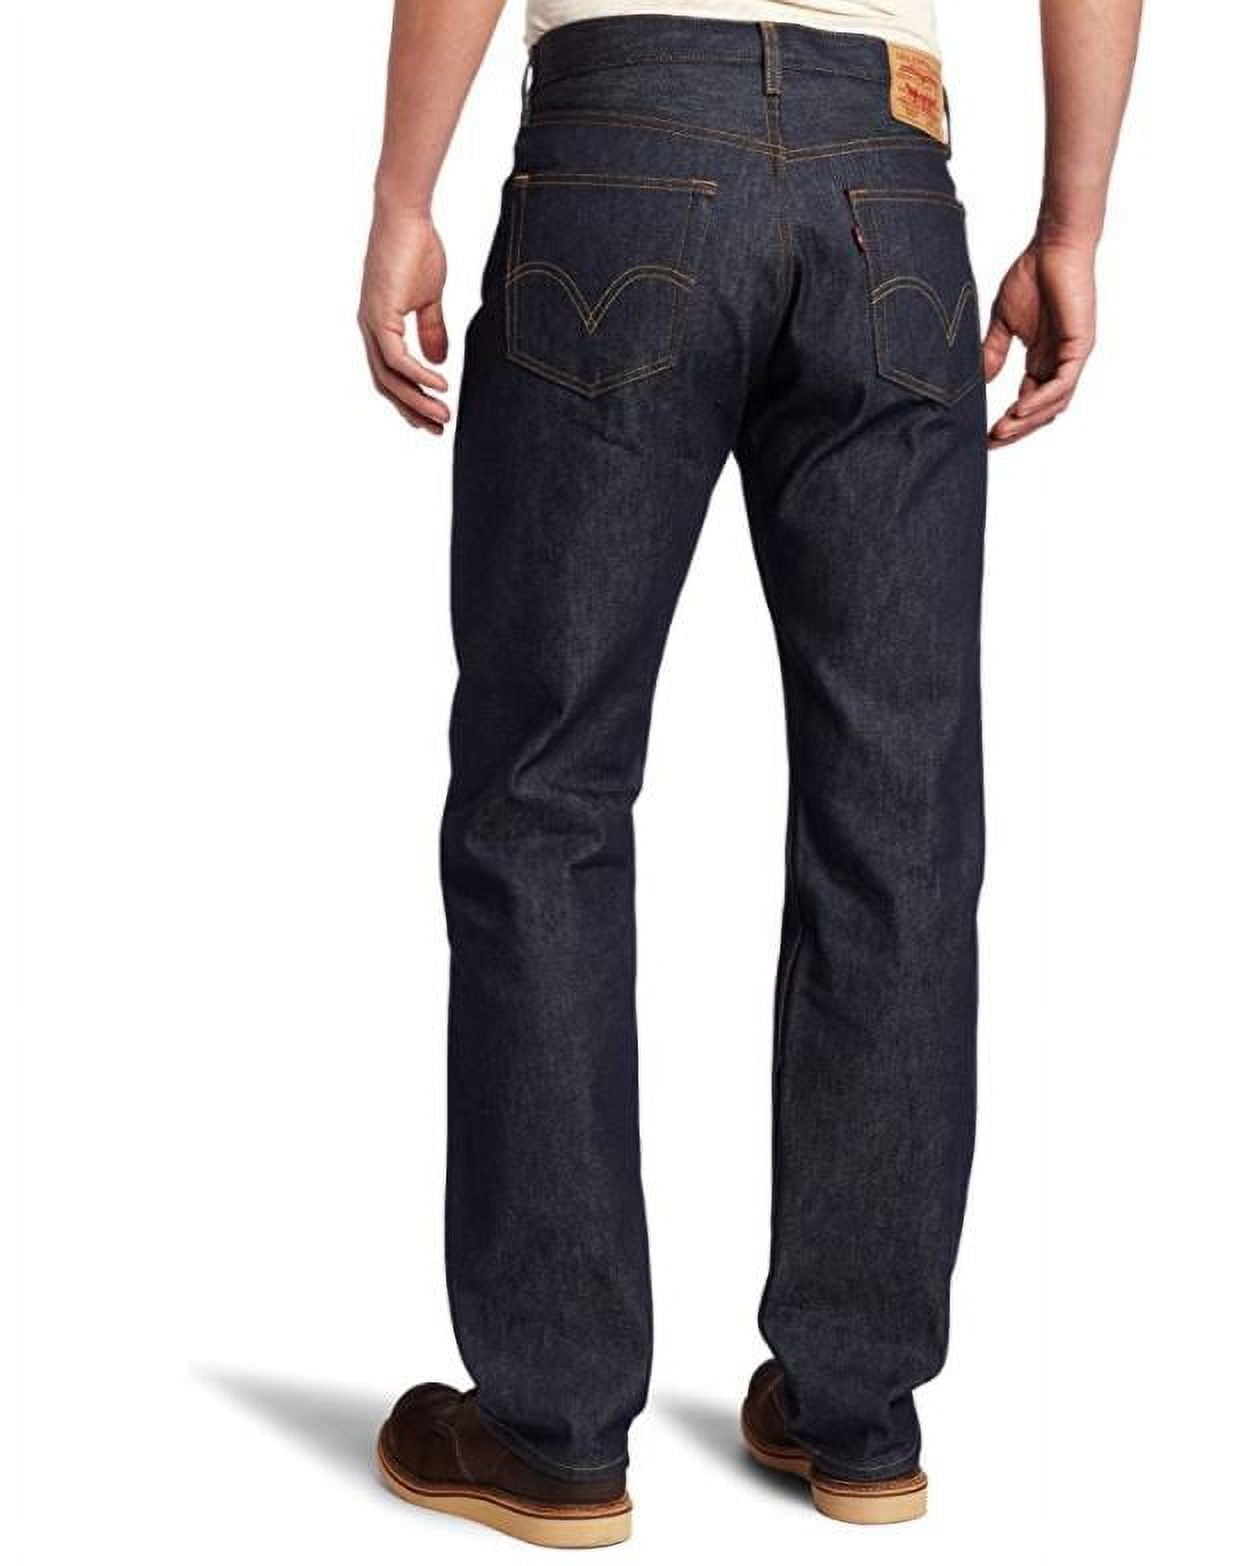 Levi's Men's Rigid 501 Original Shrink-to-Fit Jeans, 38x36